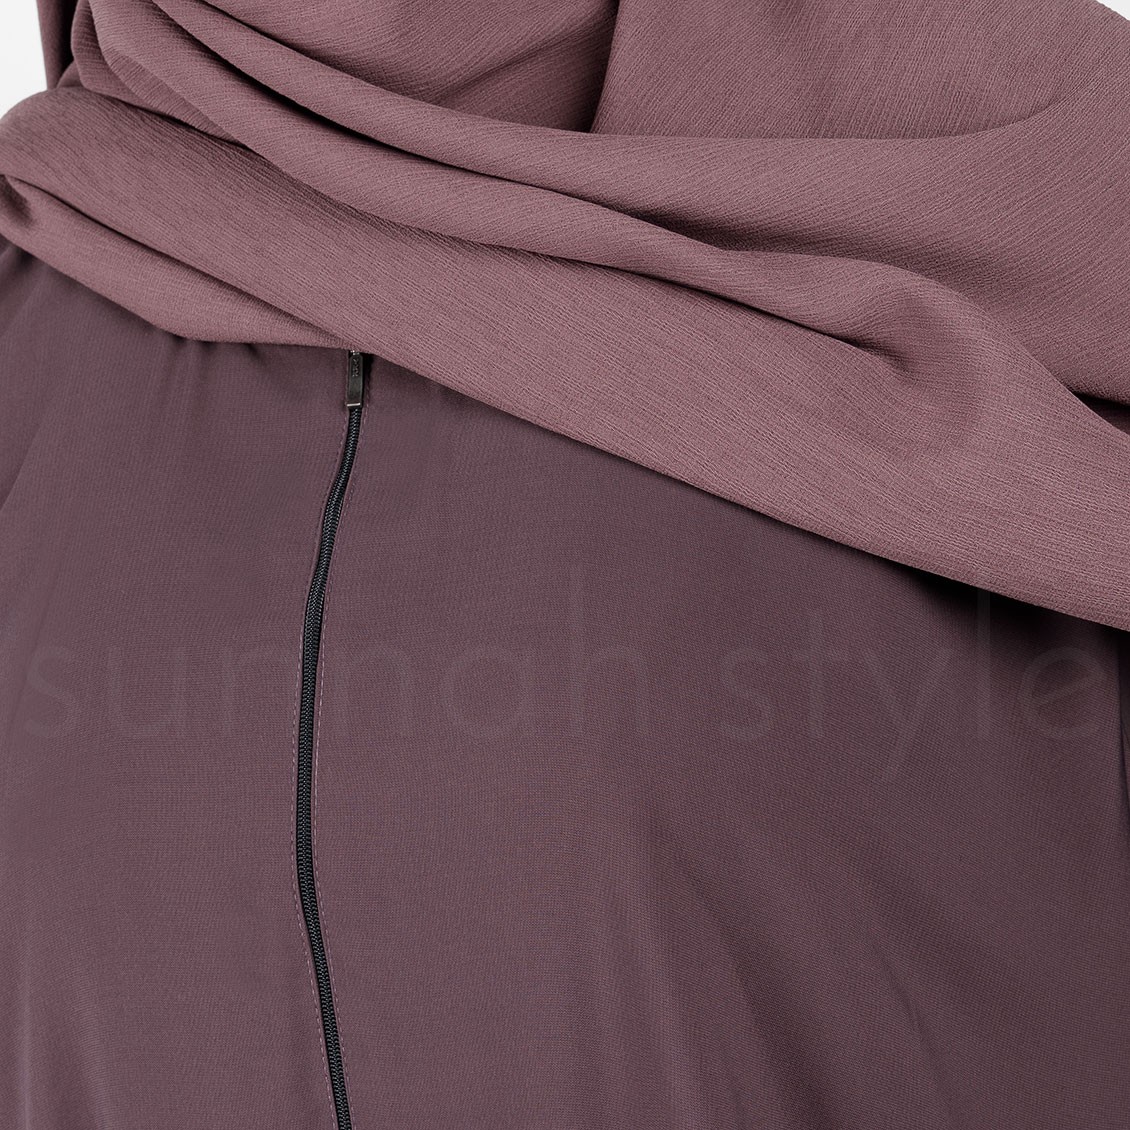 Sunnah Style Plain Closed Abaya Dried Lavender